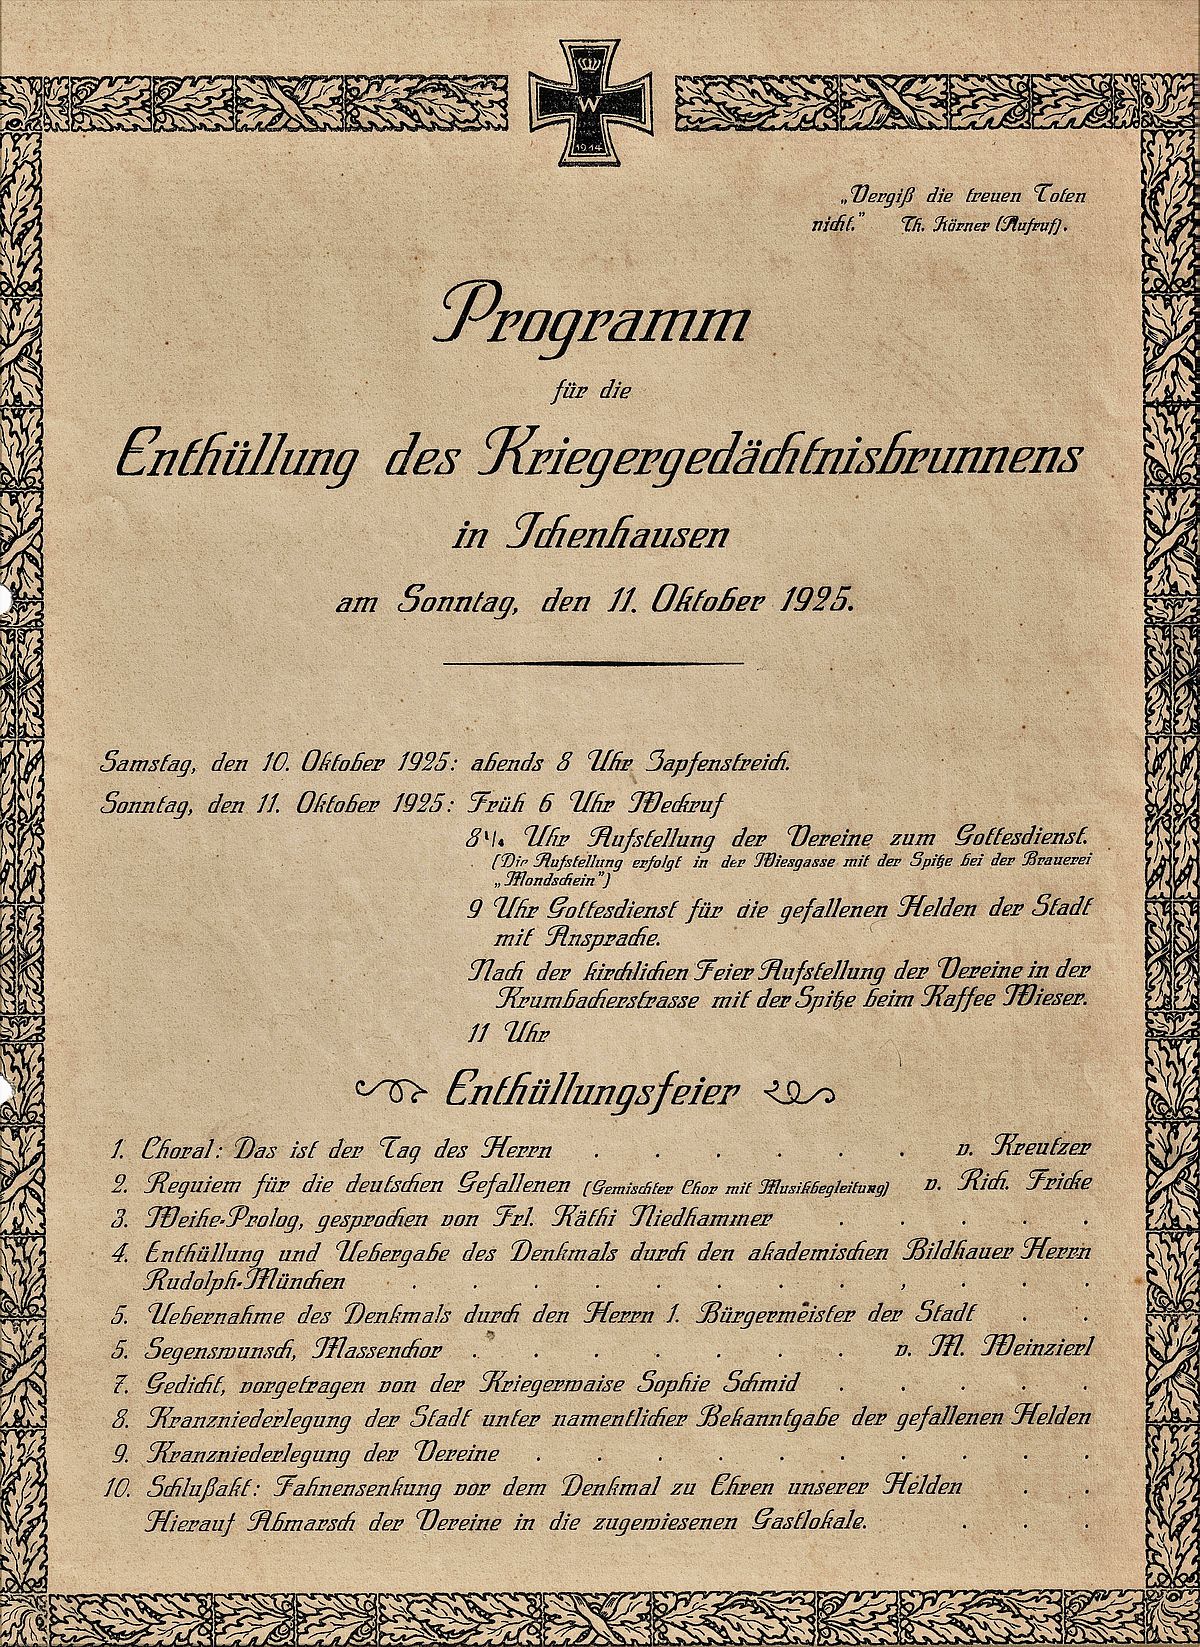 Enthüllungsfeier am 11. Oktober 1925